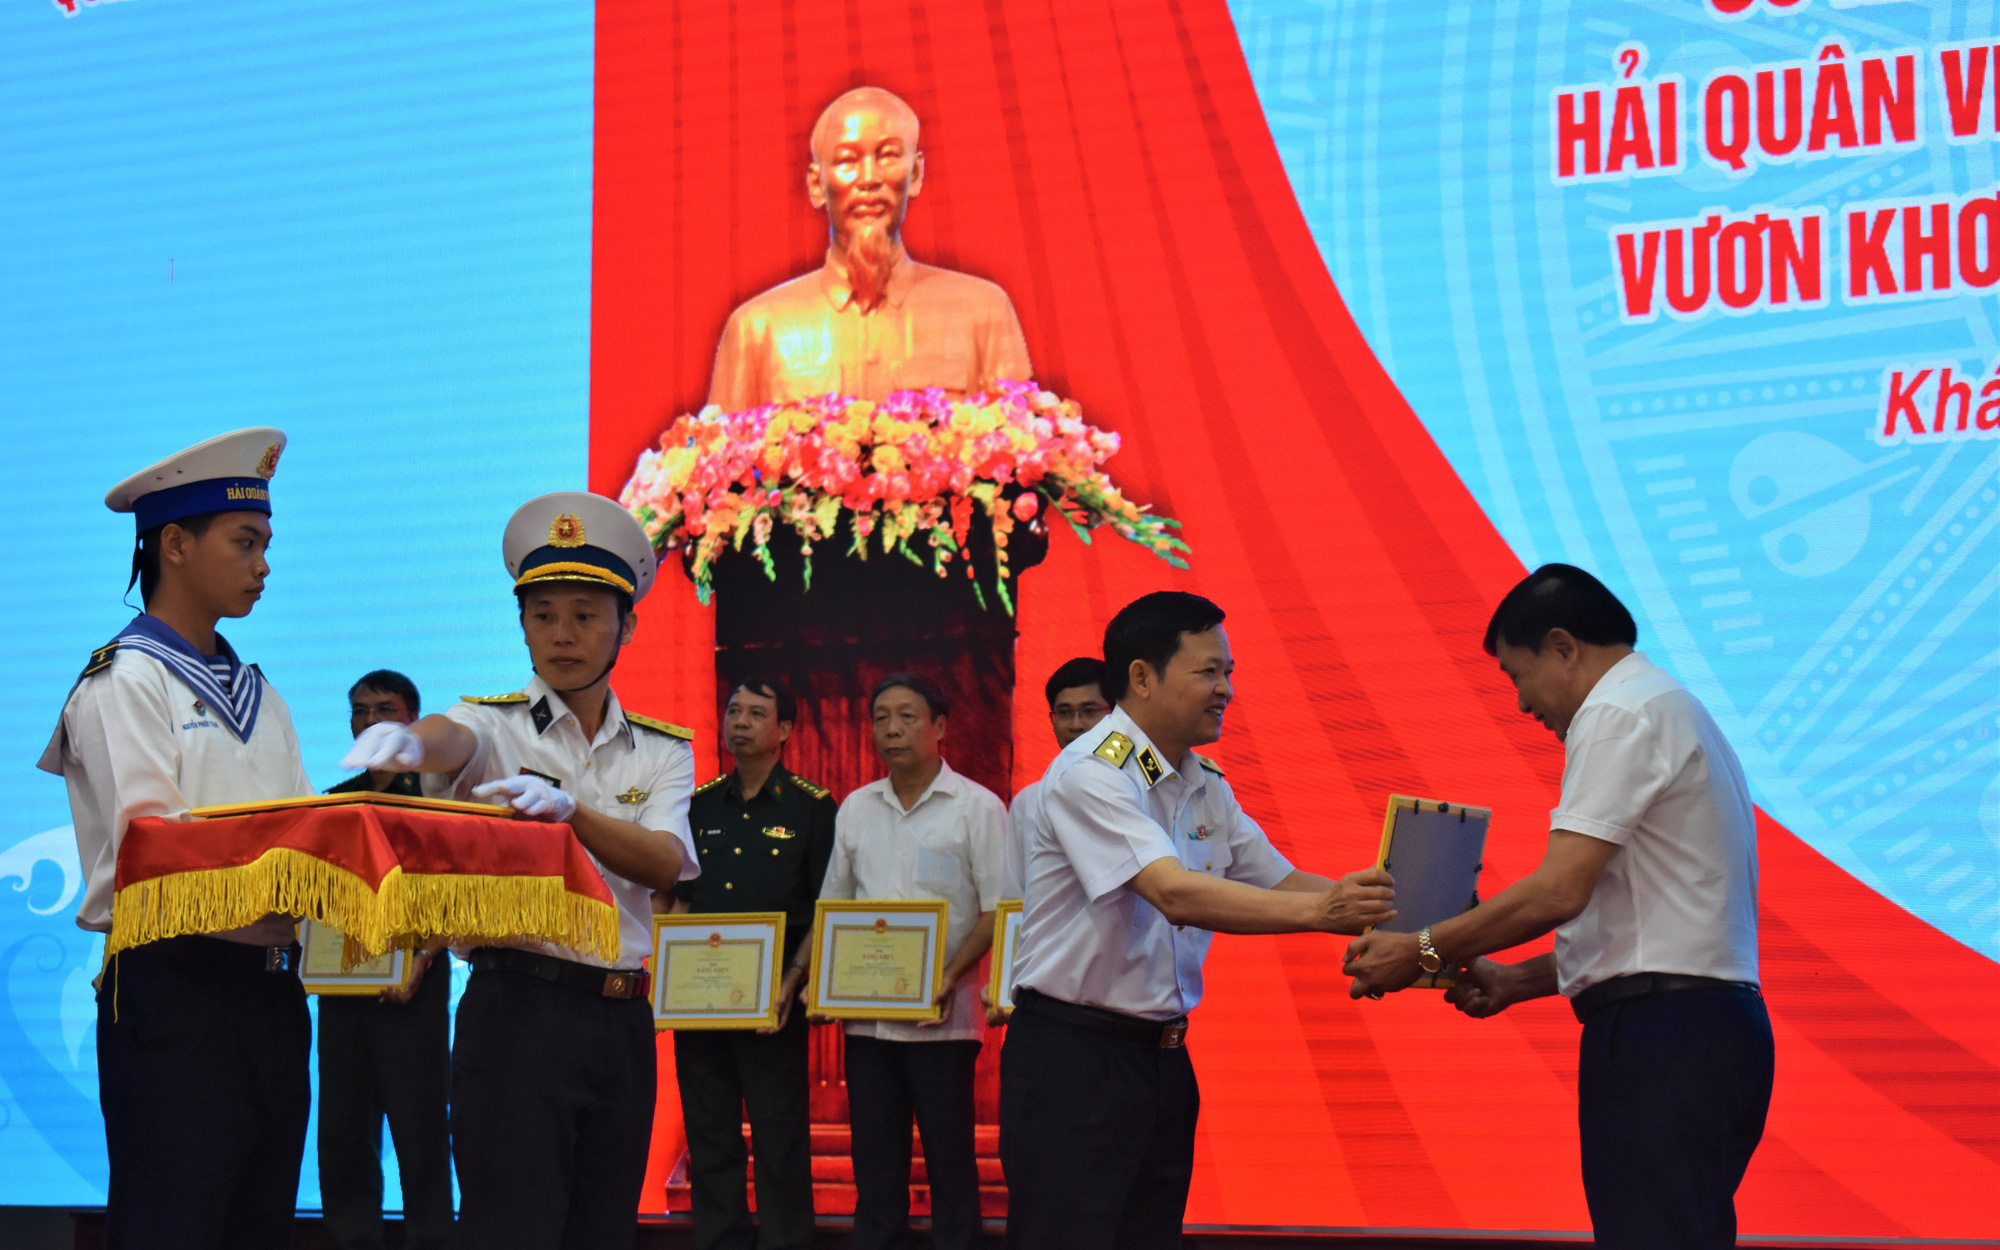 Hải quân Việt Nam tăng cường bảo vệ ngư dân đánh bắt hợp pháp trên biển